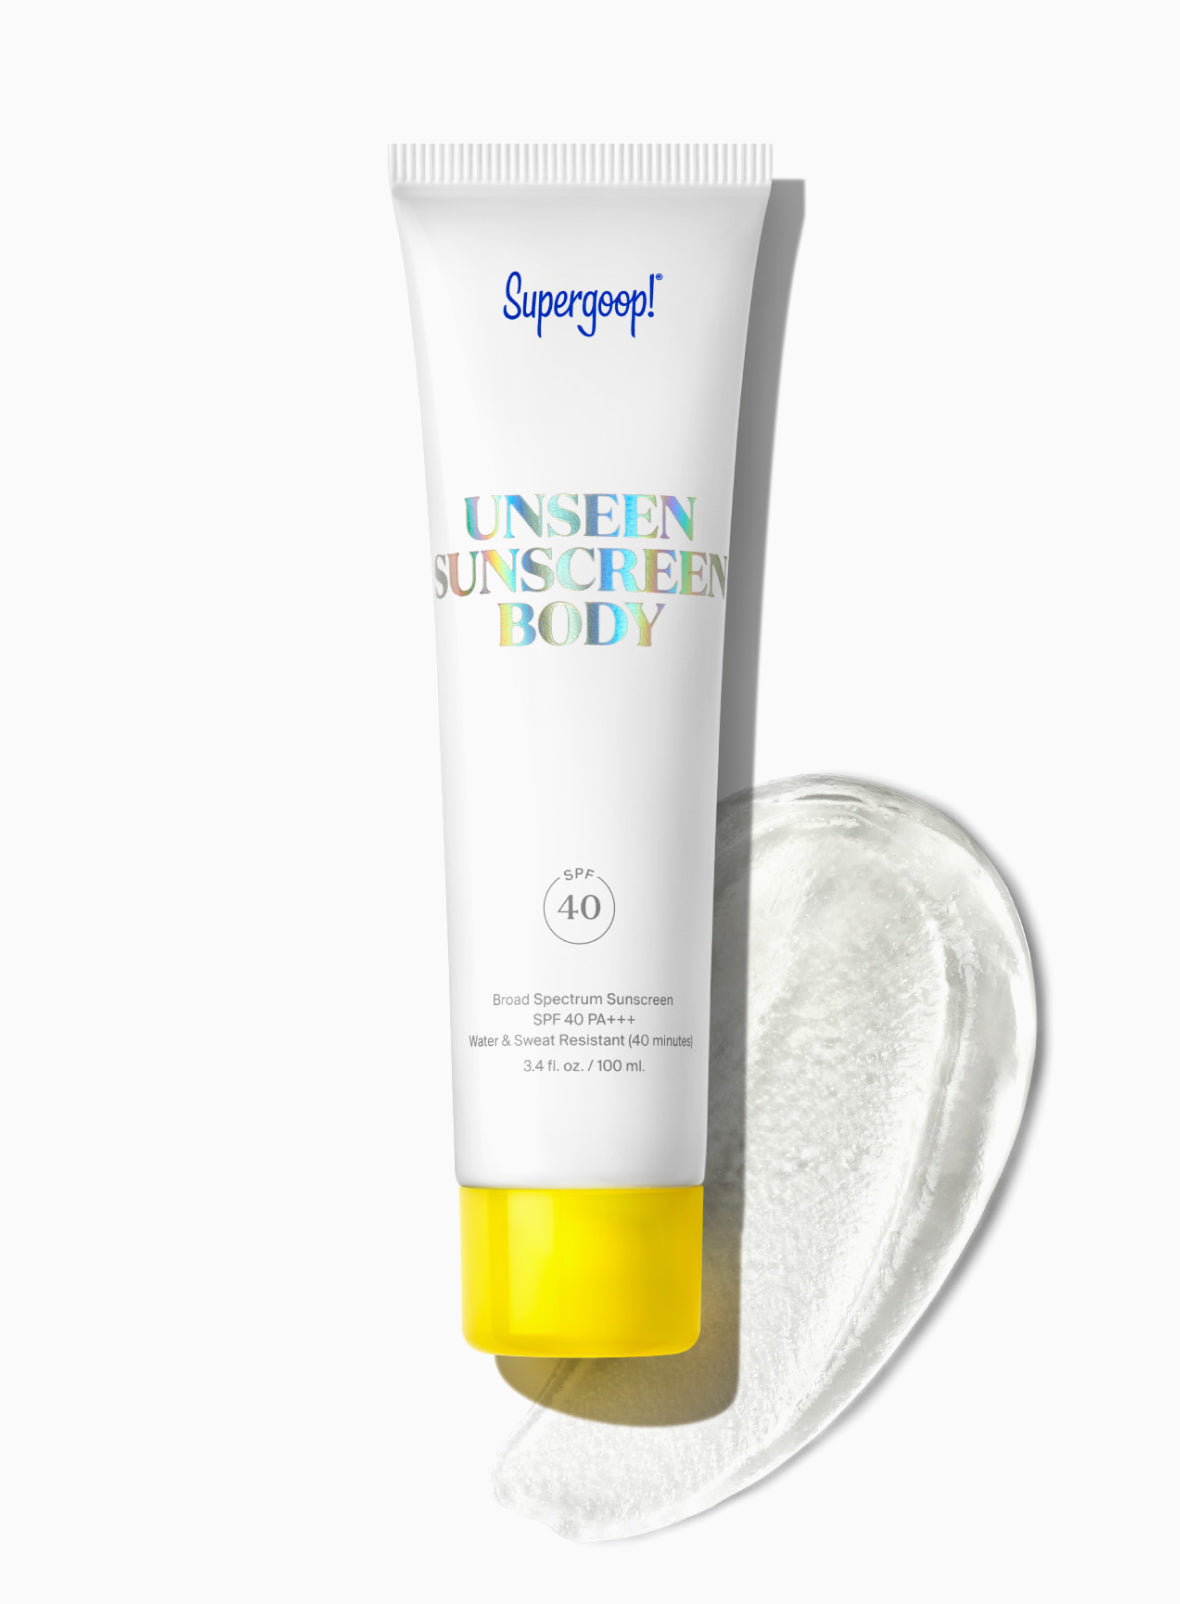 Unseen Sunscreen Body SPF 40 3.4 fl. oz. | Supergoop!